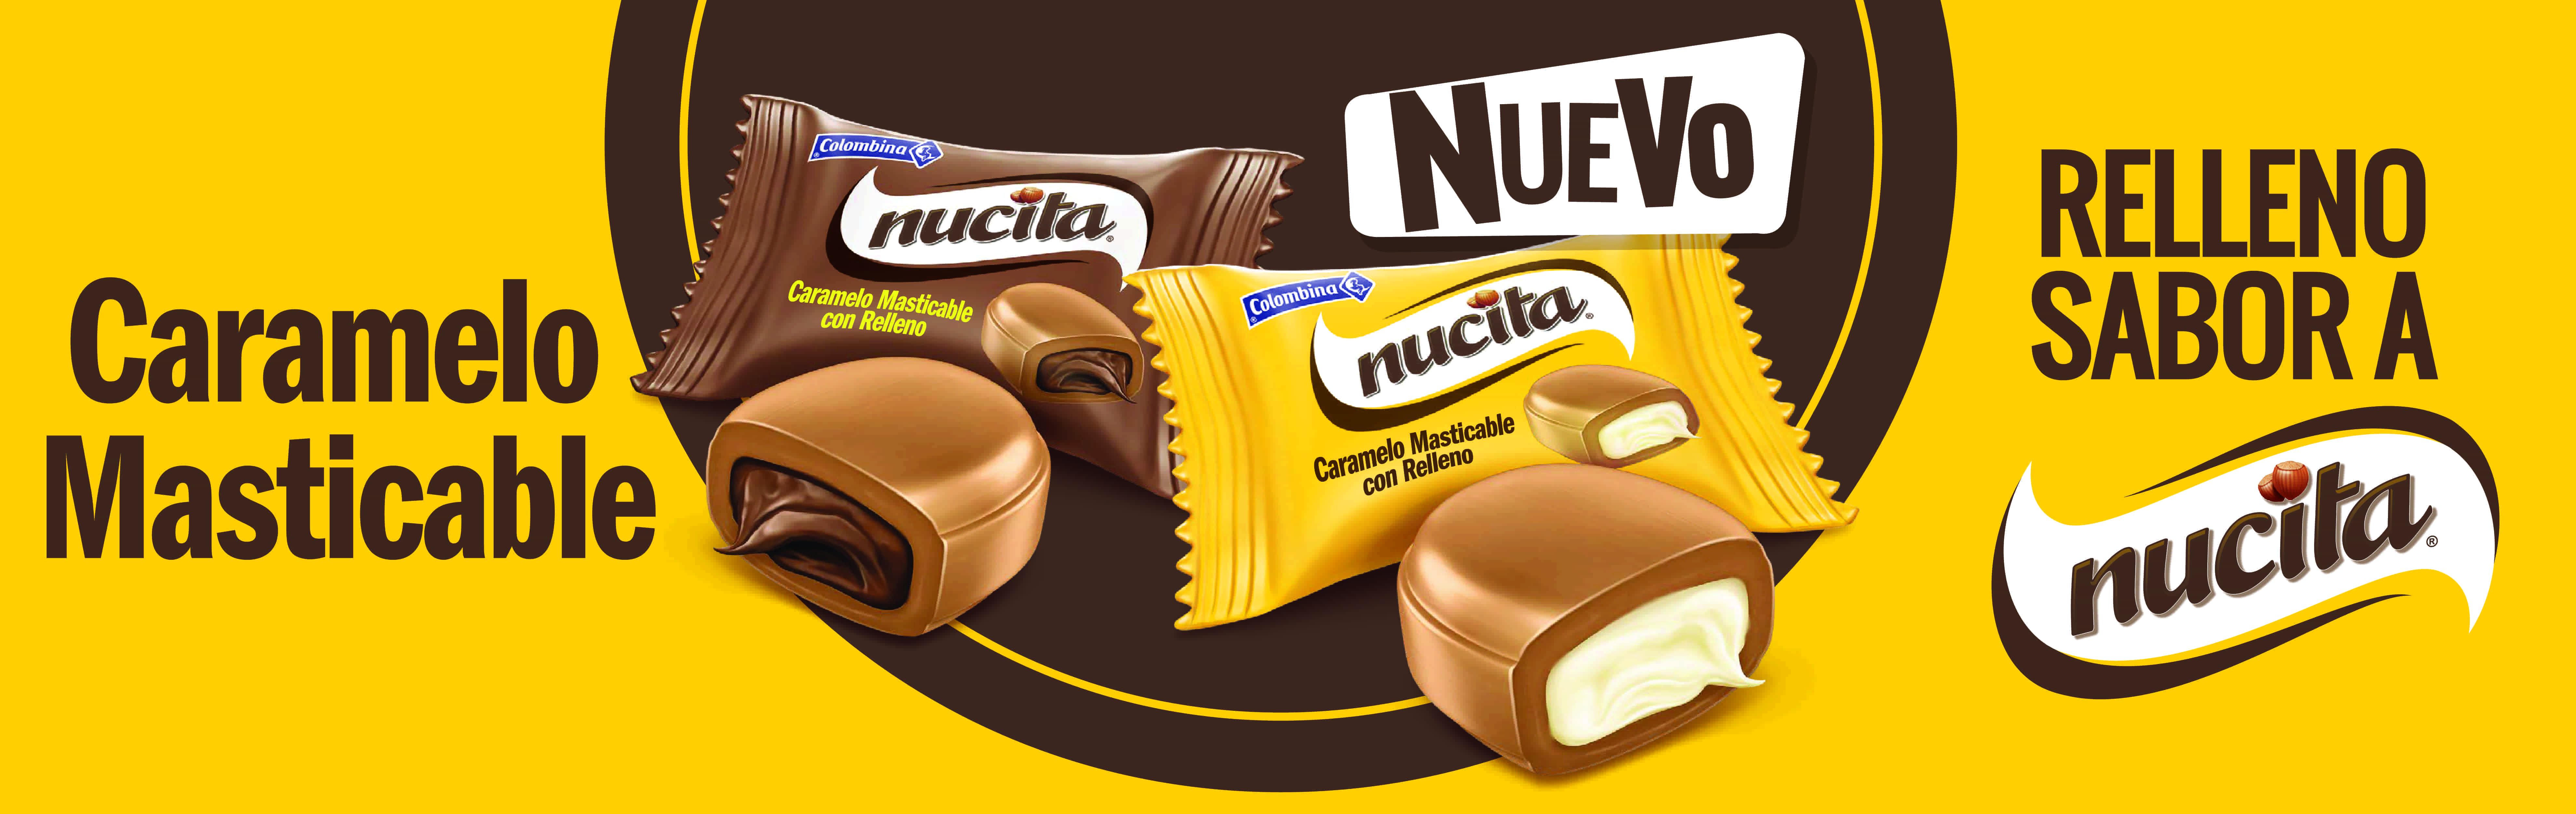 Nucita Masticable, la nueva forma de disfrutar de uno los dulces favoritos de los colombianos